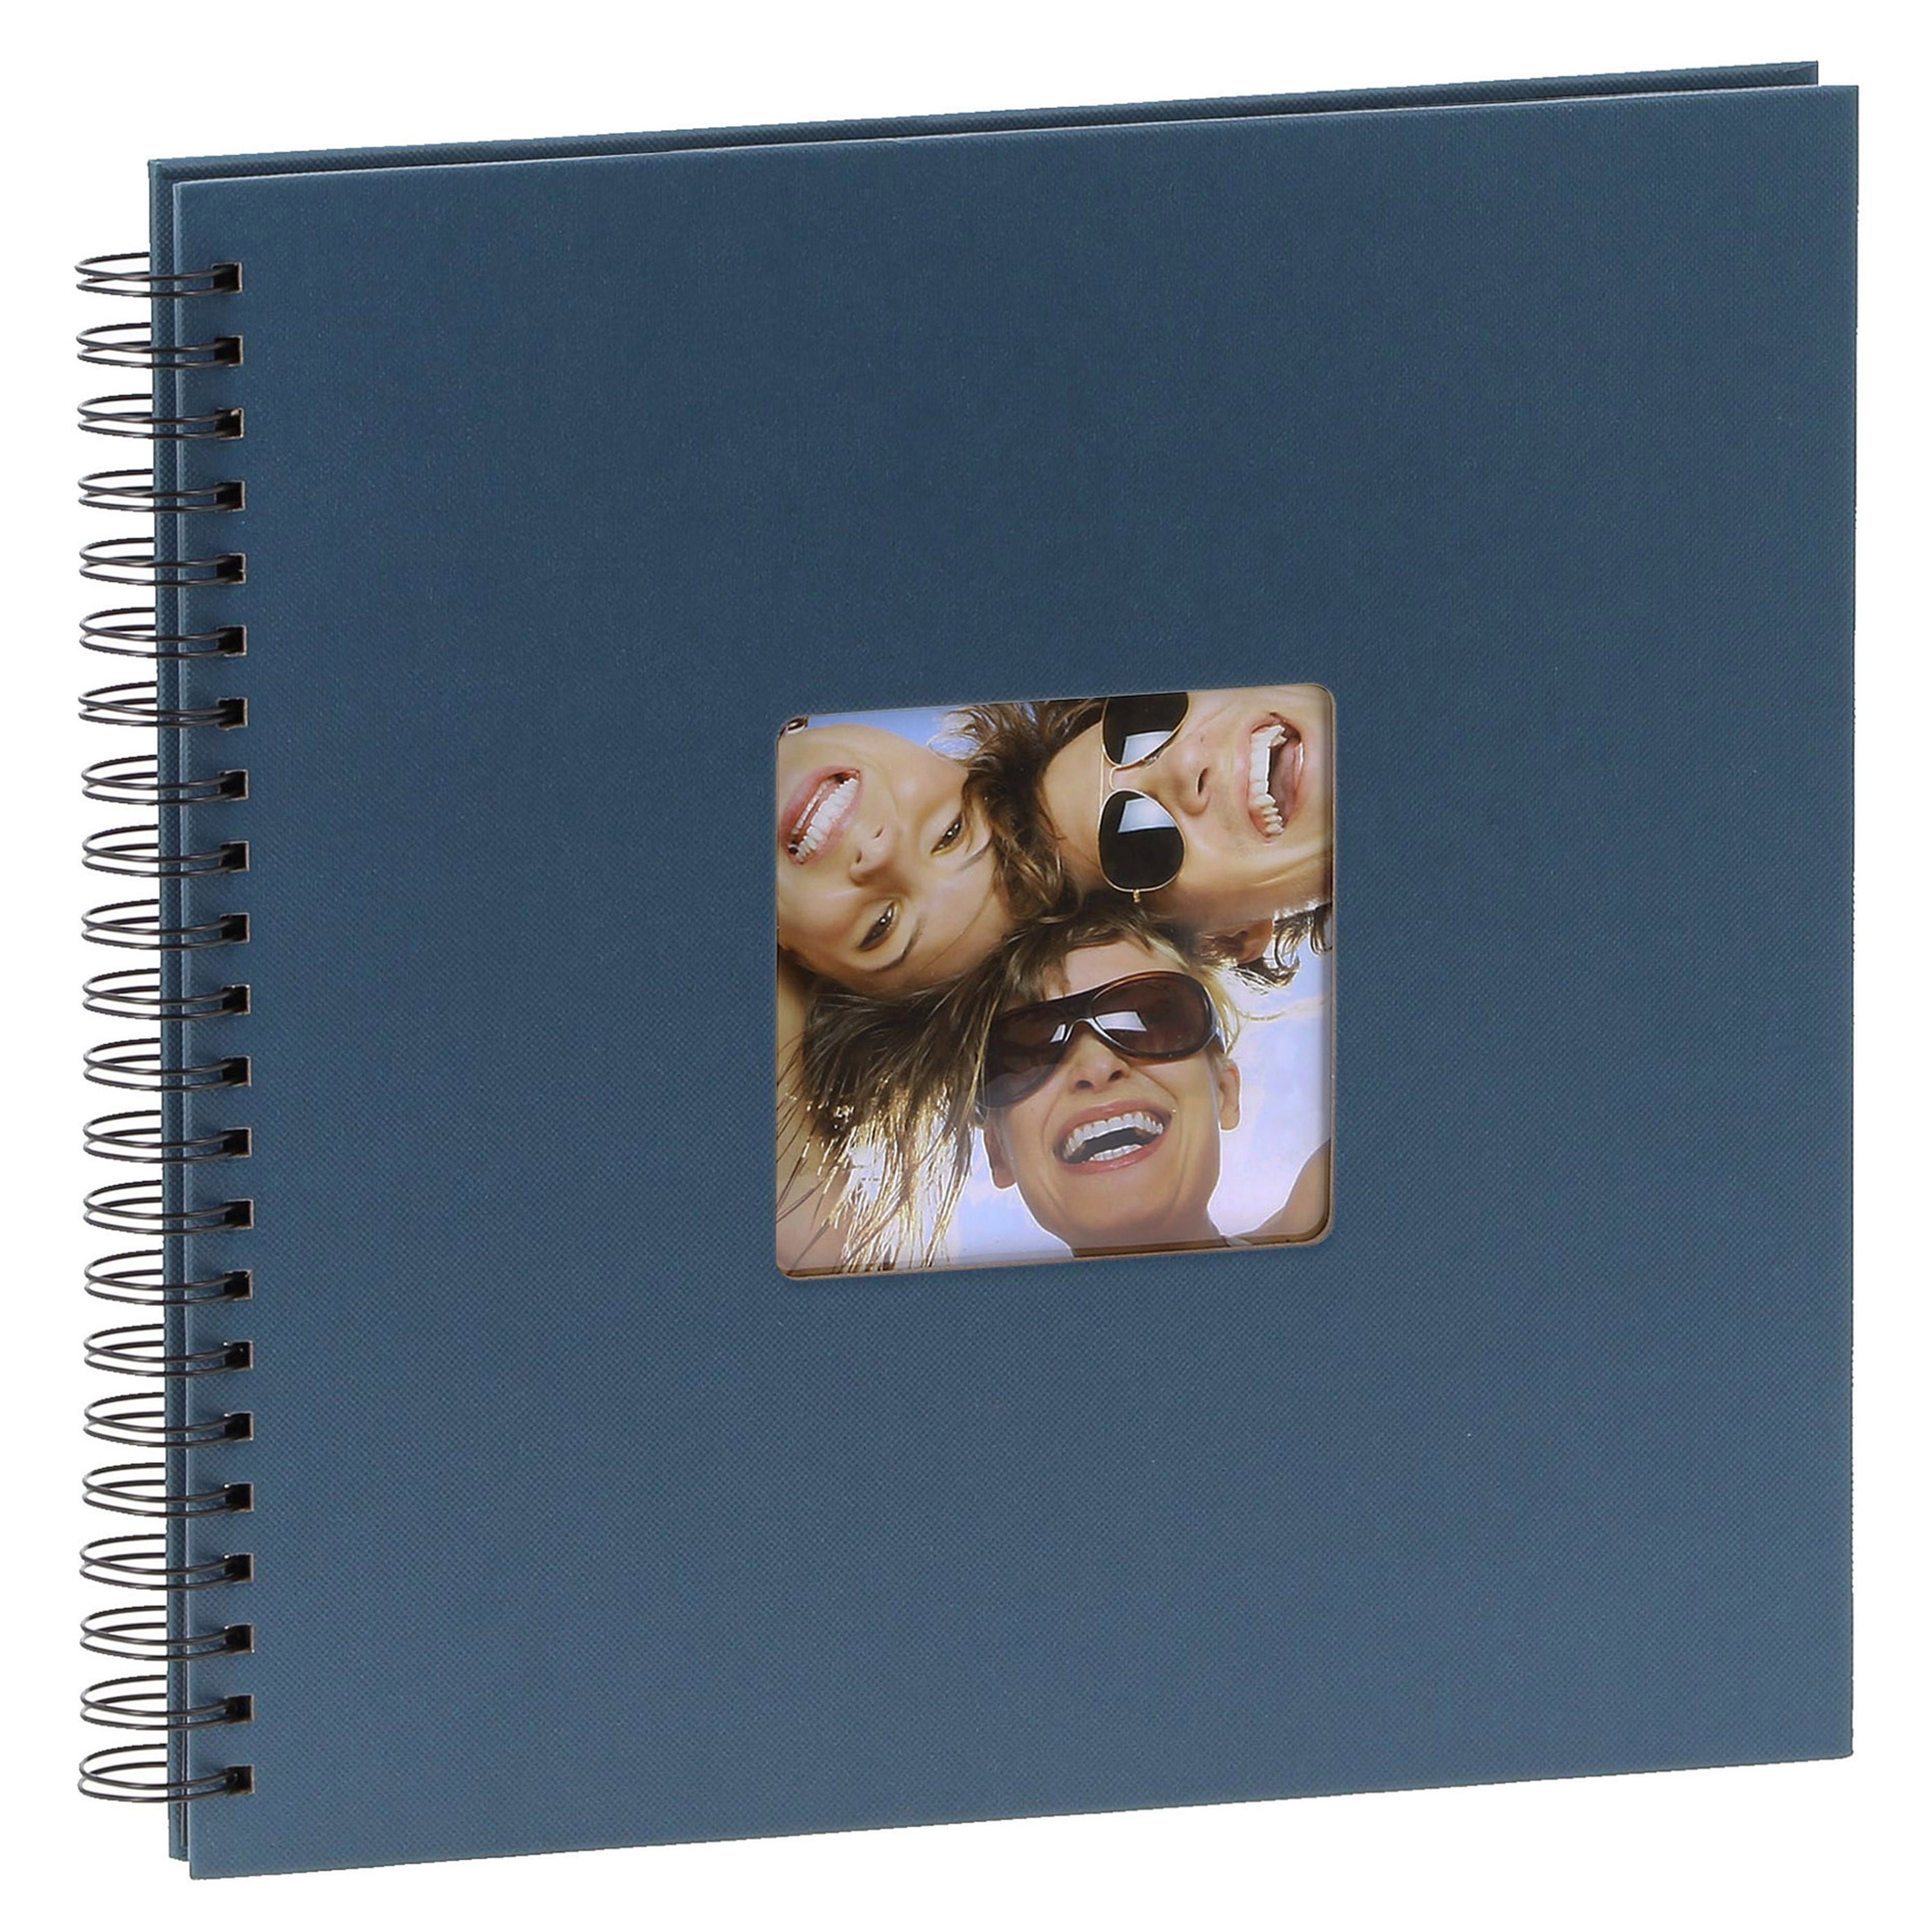 WALTHER DESIGN - Album photo traditionnel FUN - 50 pages noires - 200 photos - Couverture Bleue 30x30cm + fenêtre